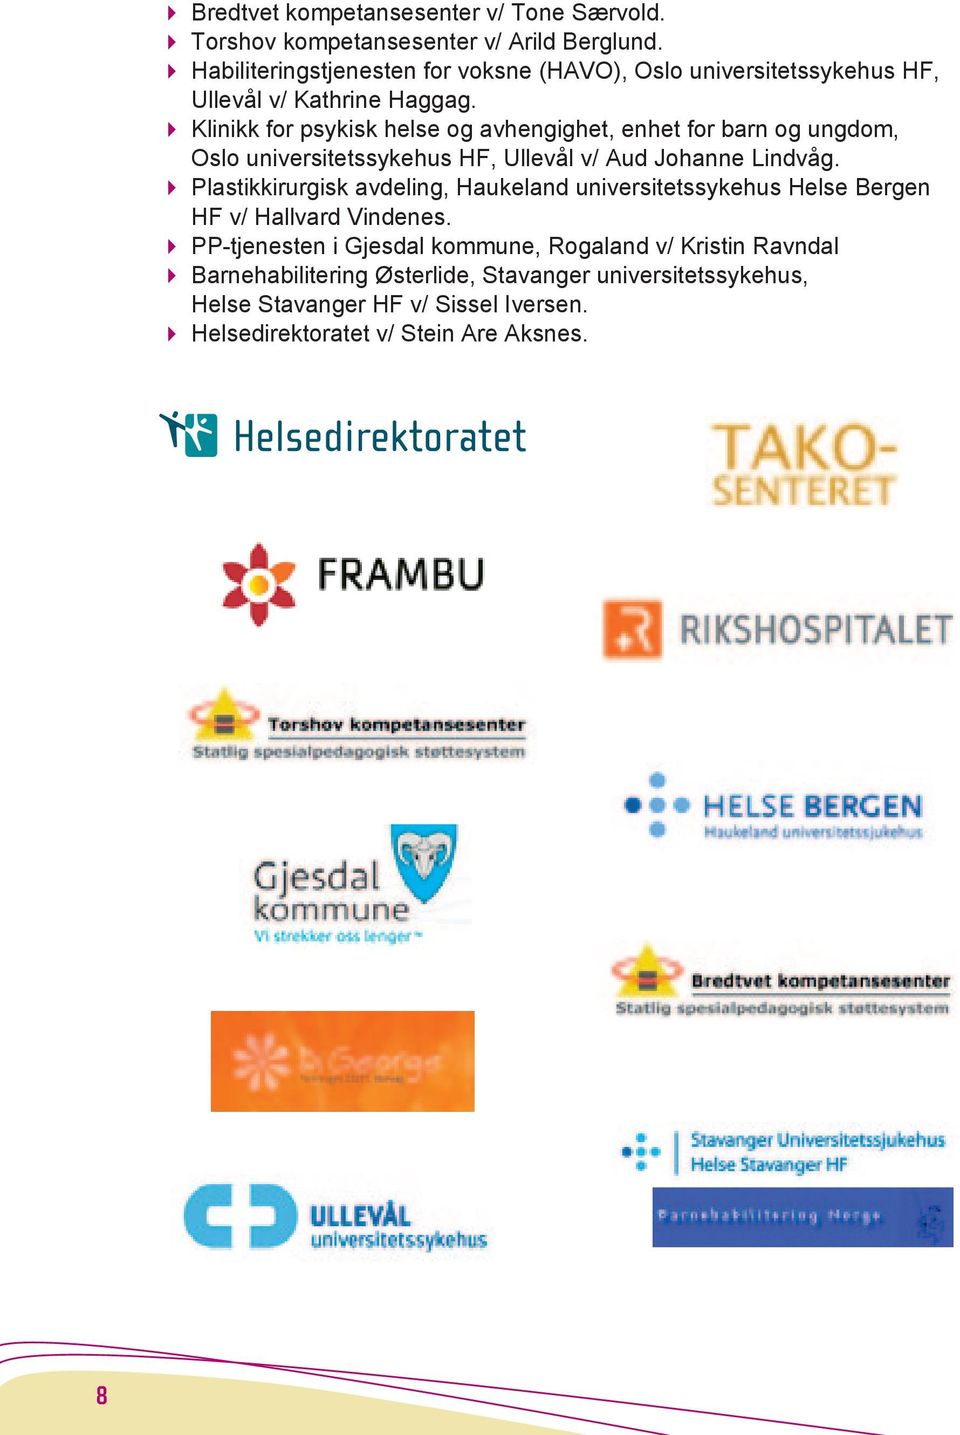 4 Klinikk for psykisk helse og avhengighet, enhet for barn og ungdom, Oslo universitetssykehus HF, Ullevål v/ Aud Johanne Lindvåg.